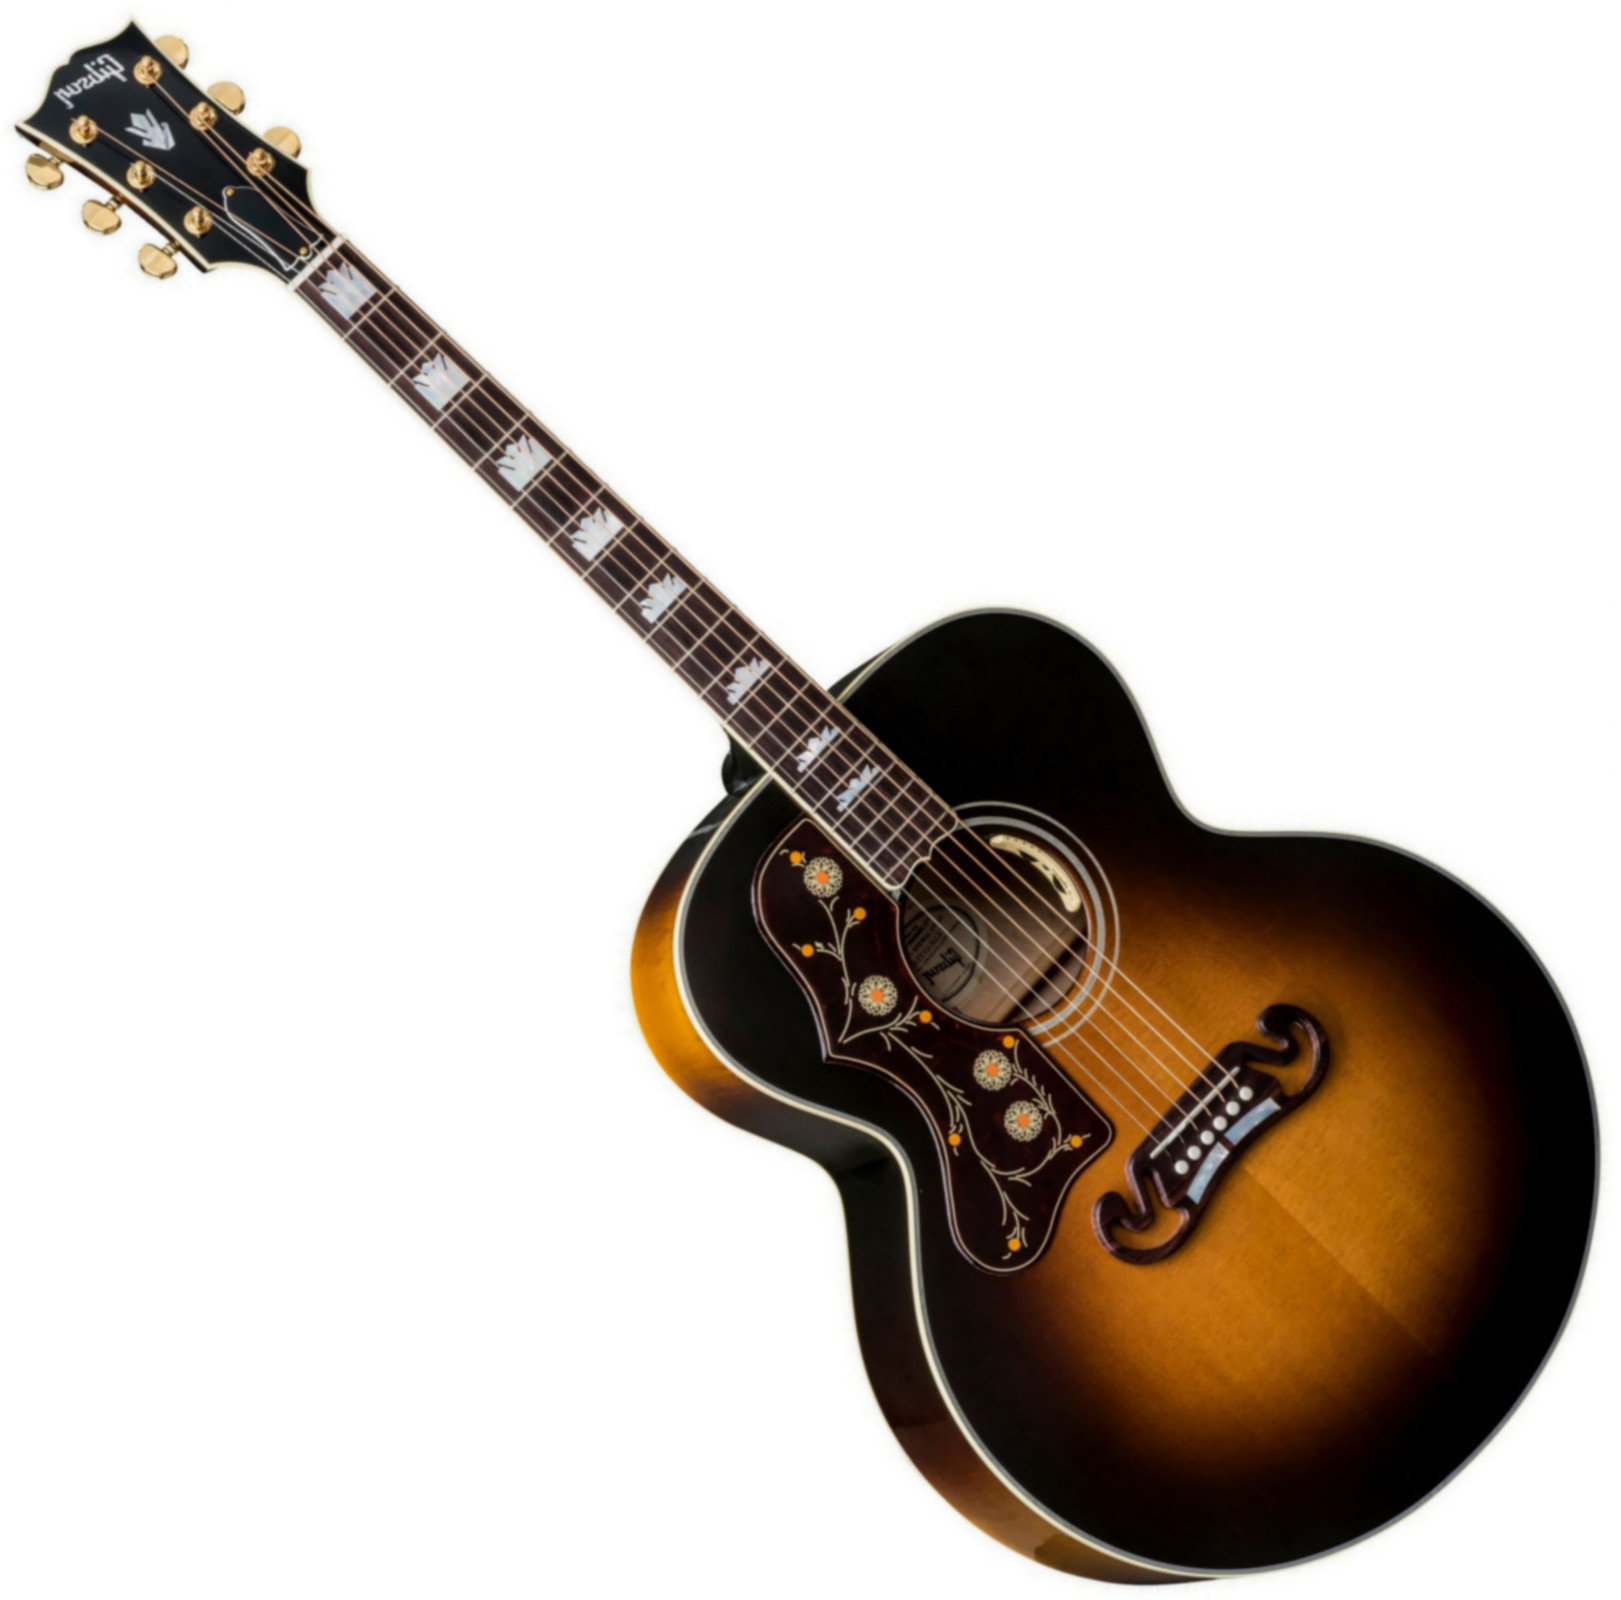 Ηλεκτροακουστική Κιθάρα Jumbo Gibson J-200 Standard 2019 Vintage Sunburst Lefty